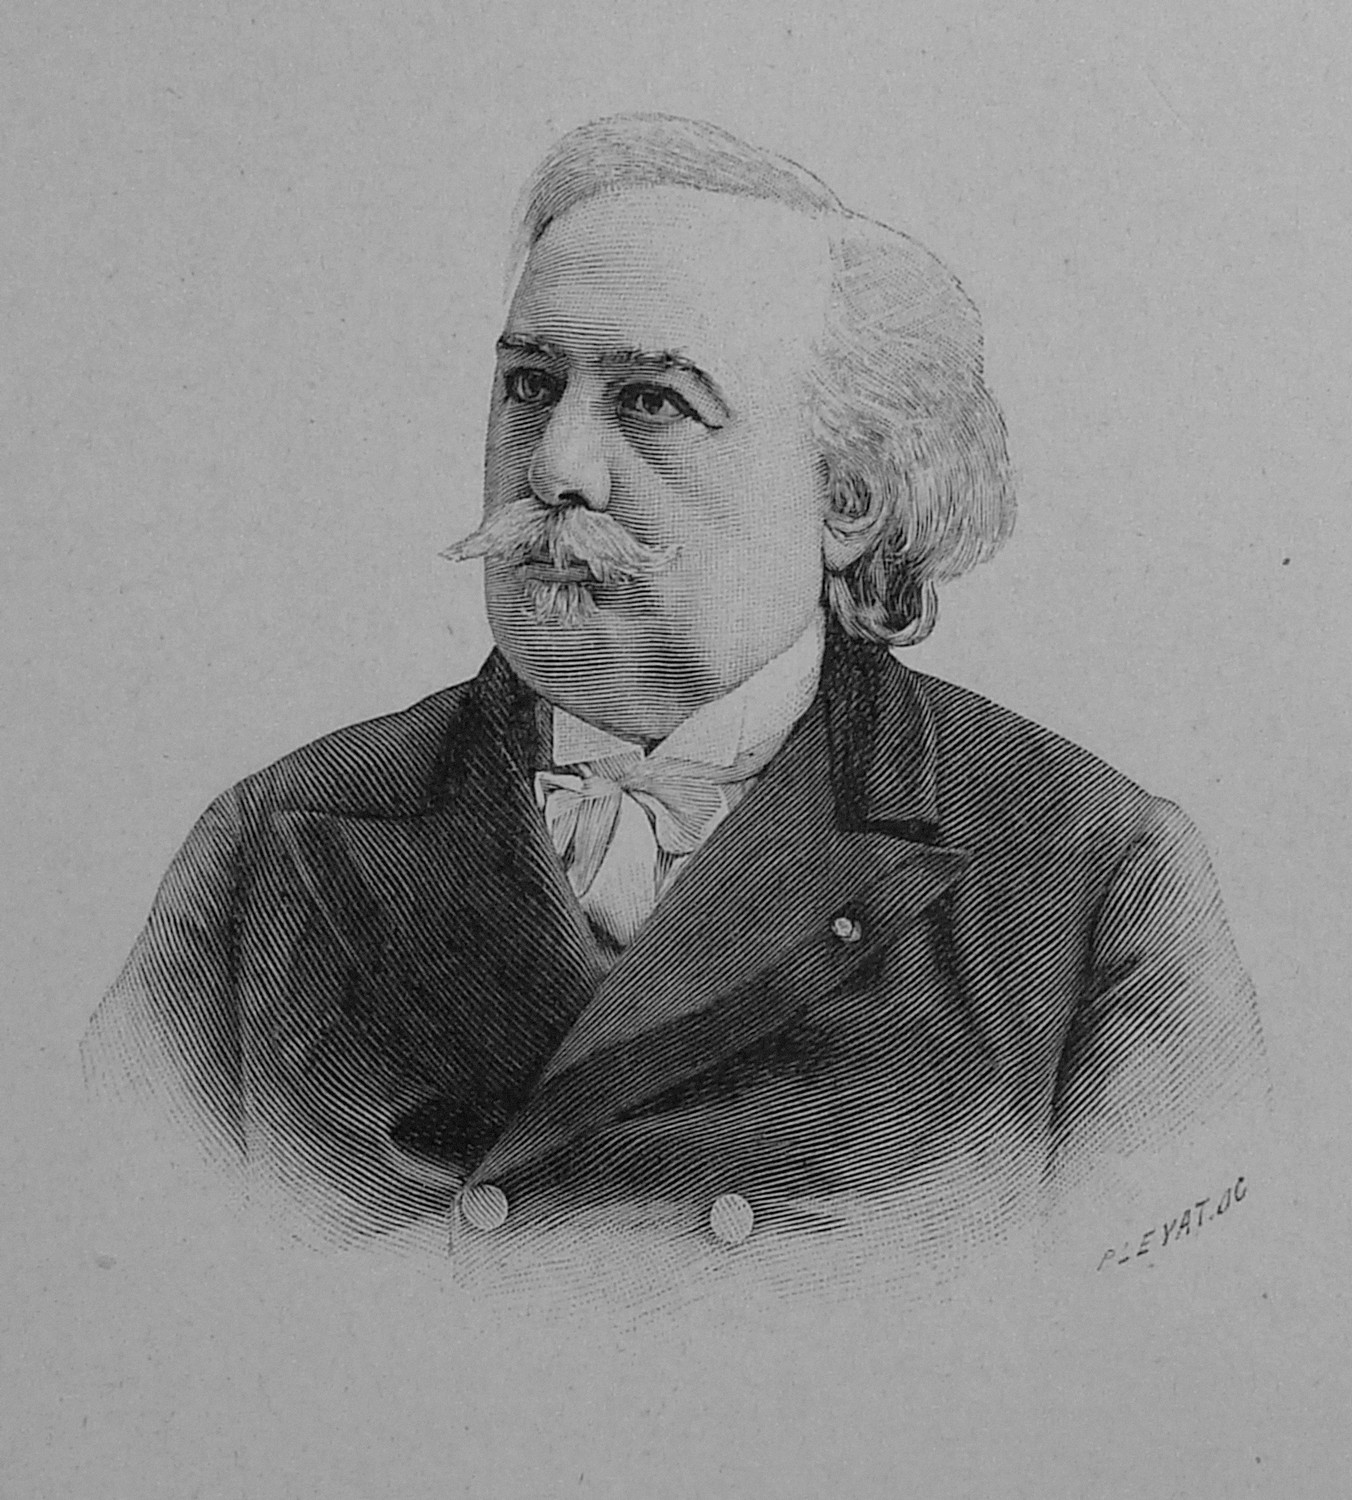 Hector France (1837-1908), gravure d'après photo dans Figures contemporaines Album Mariani tome VII, 1902. Graveur P. Leyat.